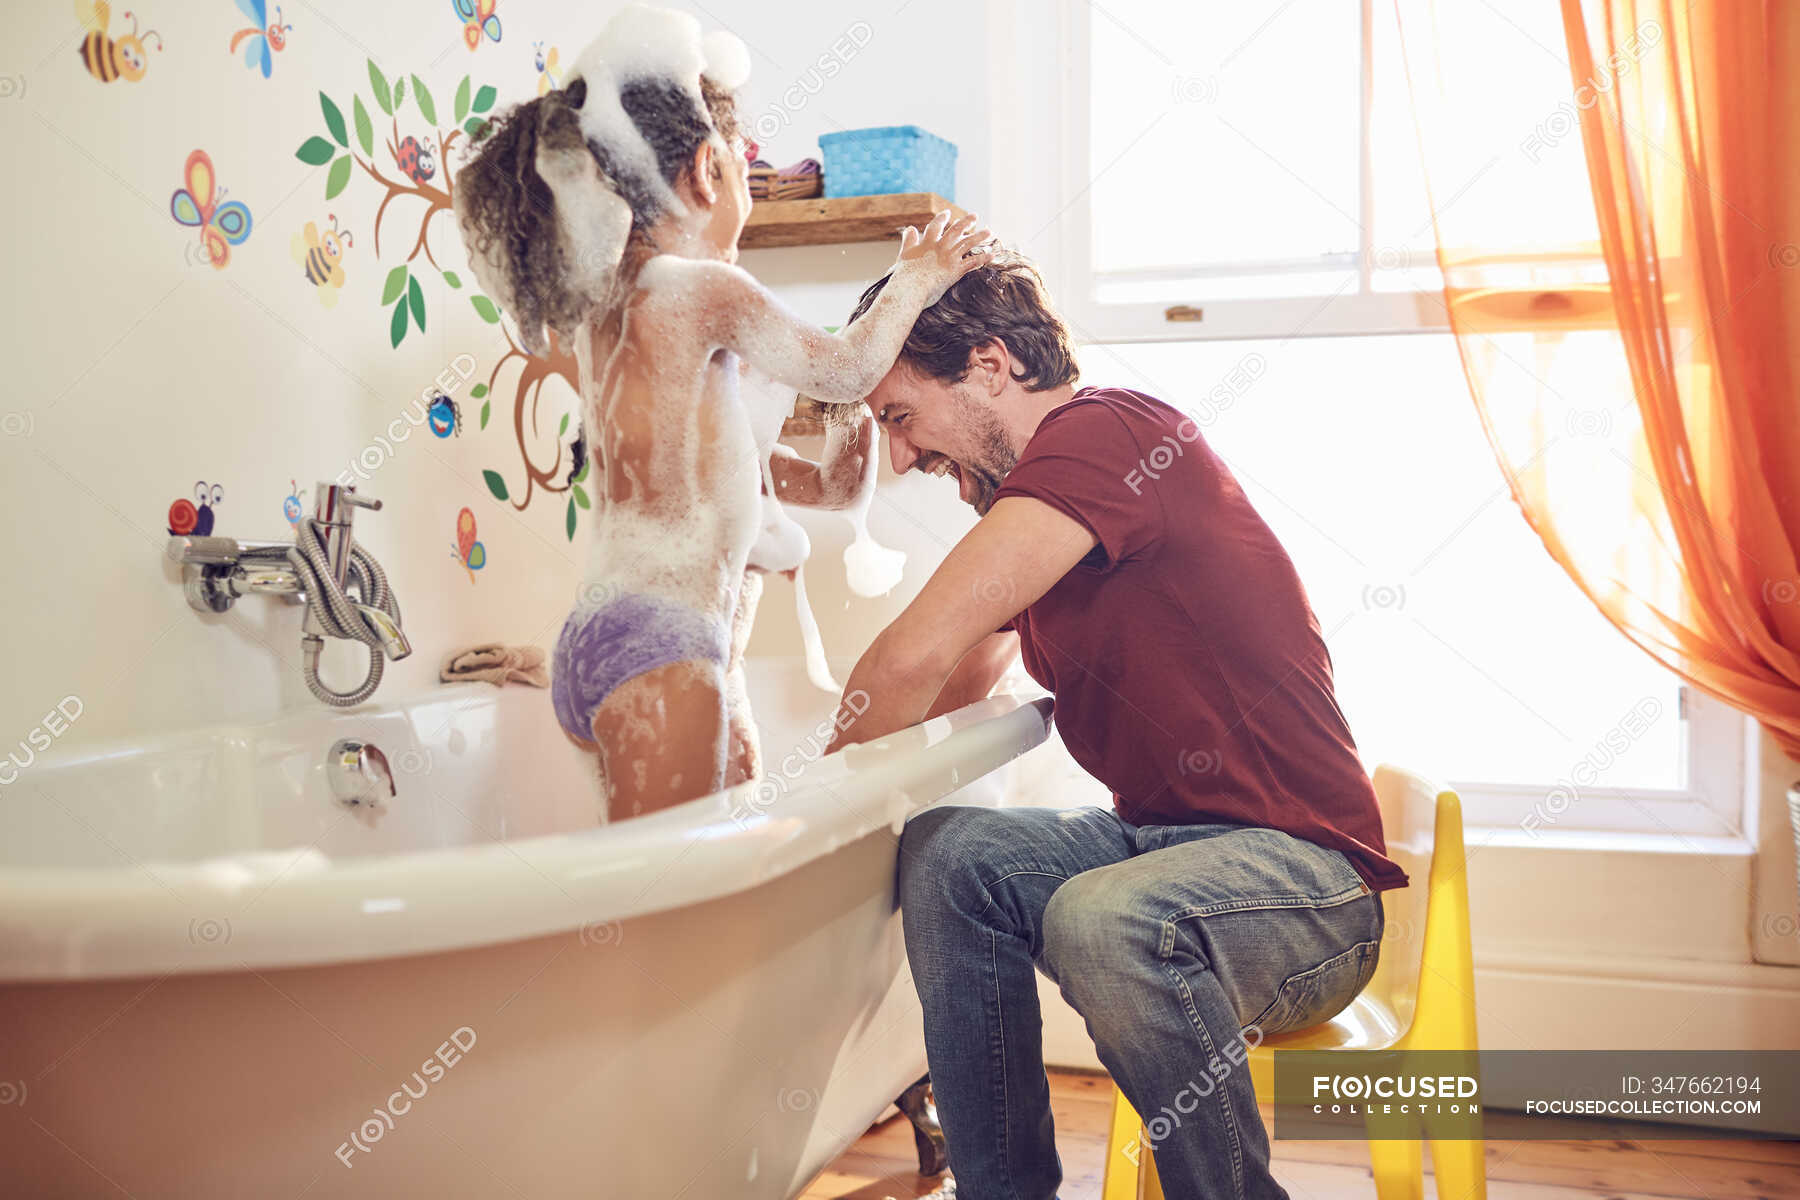 Папа купает дочку. Папа купается в ванной. Купаю дочь. Папа купает дочь. Папа моет дочь.